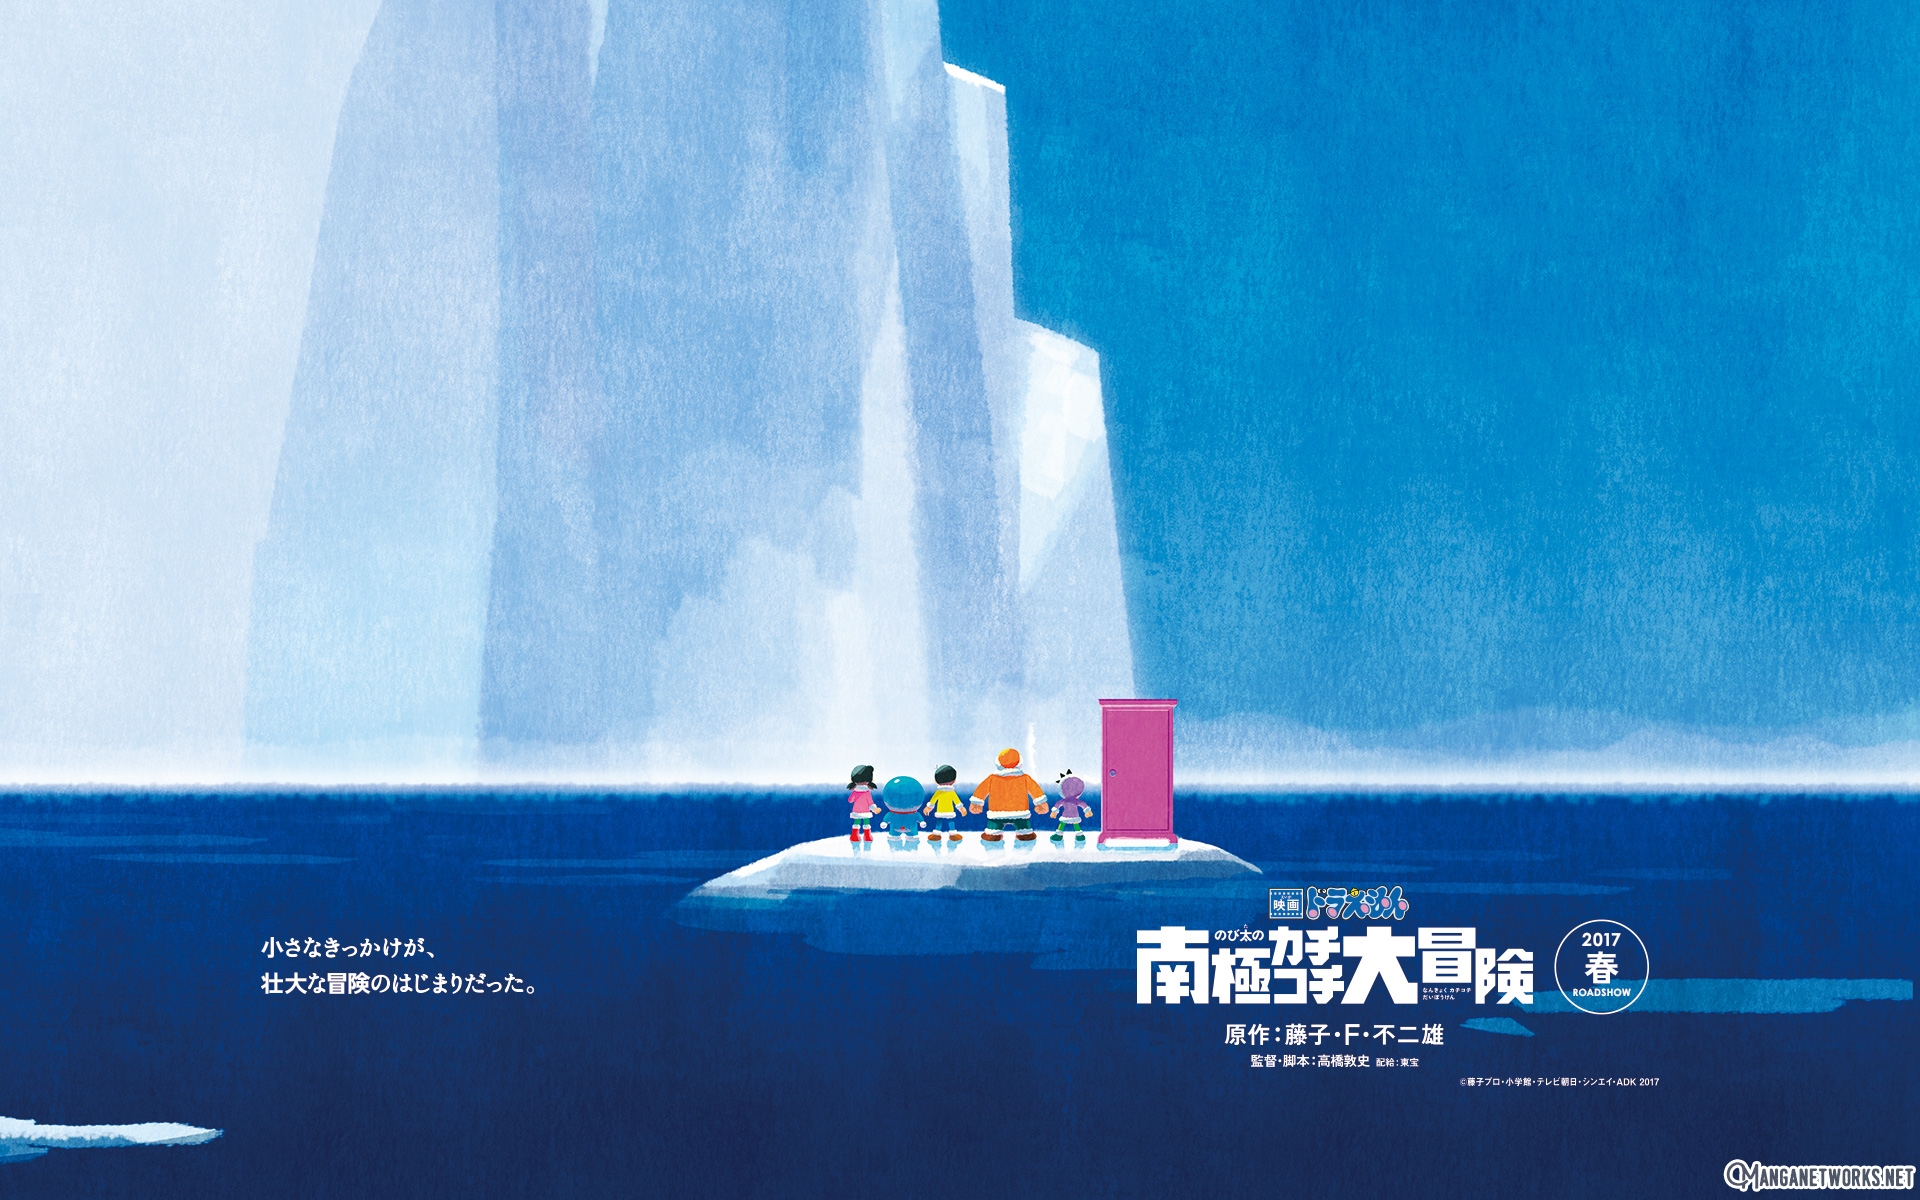 Trailer của movie thứ 37 của ‘Doraemon’ tràn ngập băng tuyết